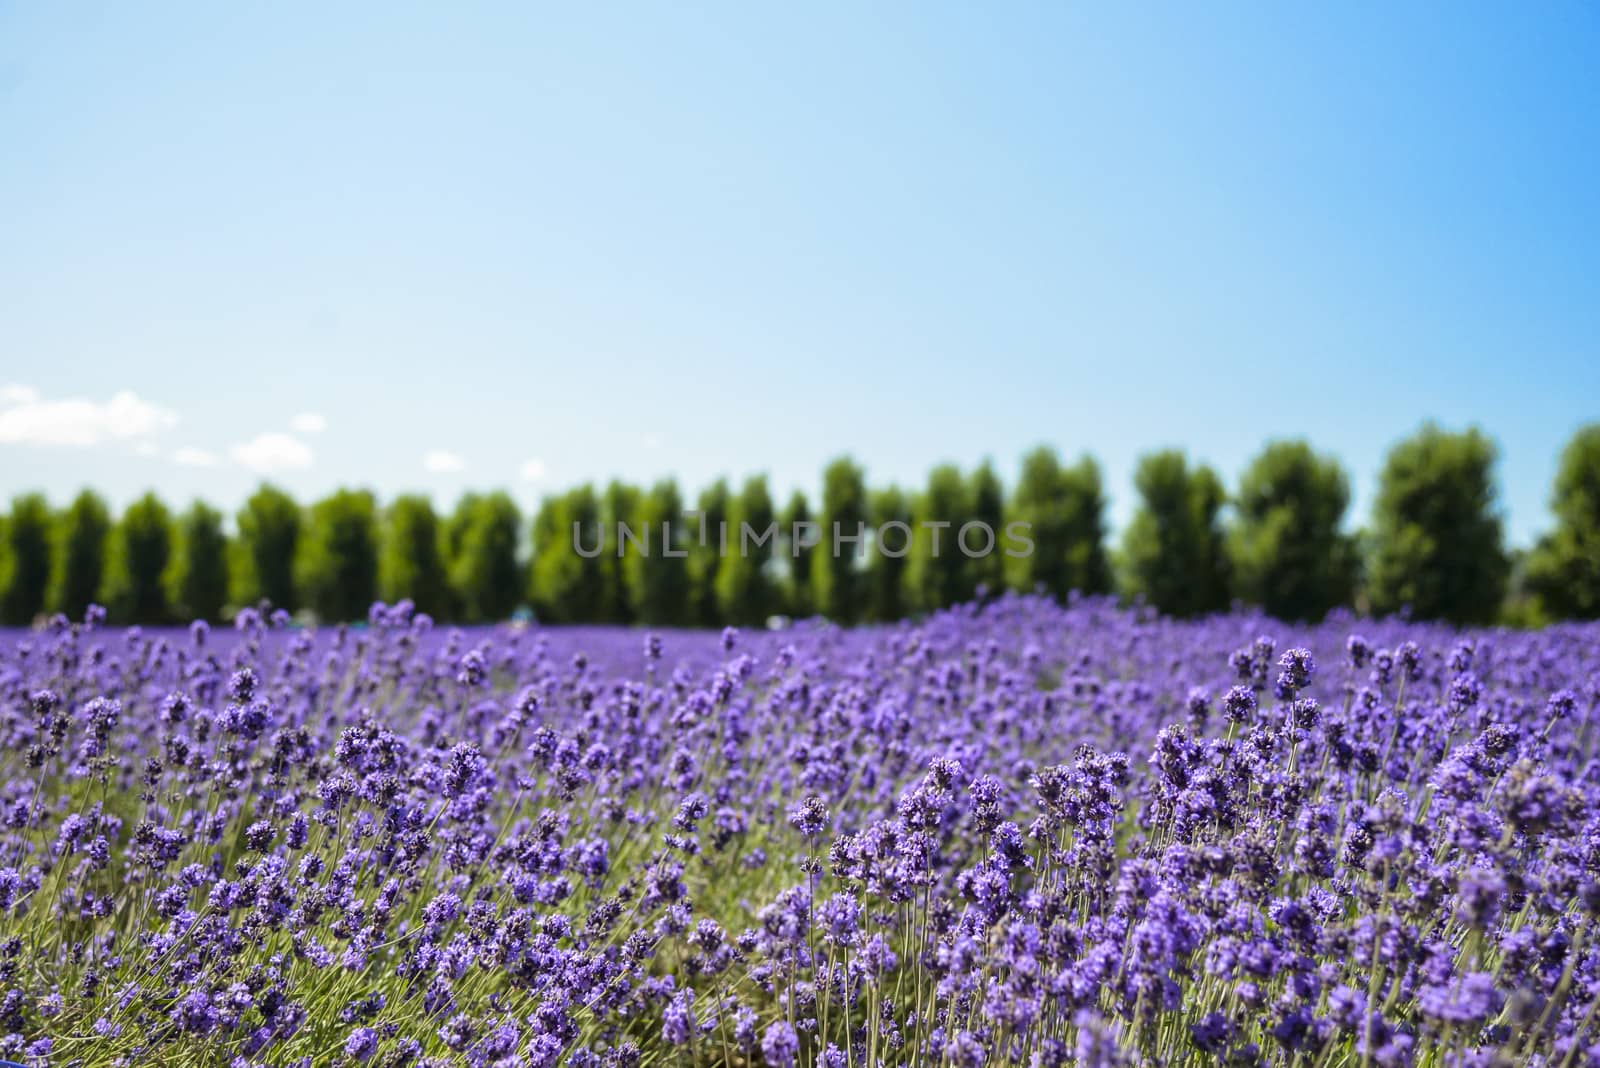 Lavender flower field with blue sky1 by gjeerawut